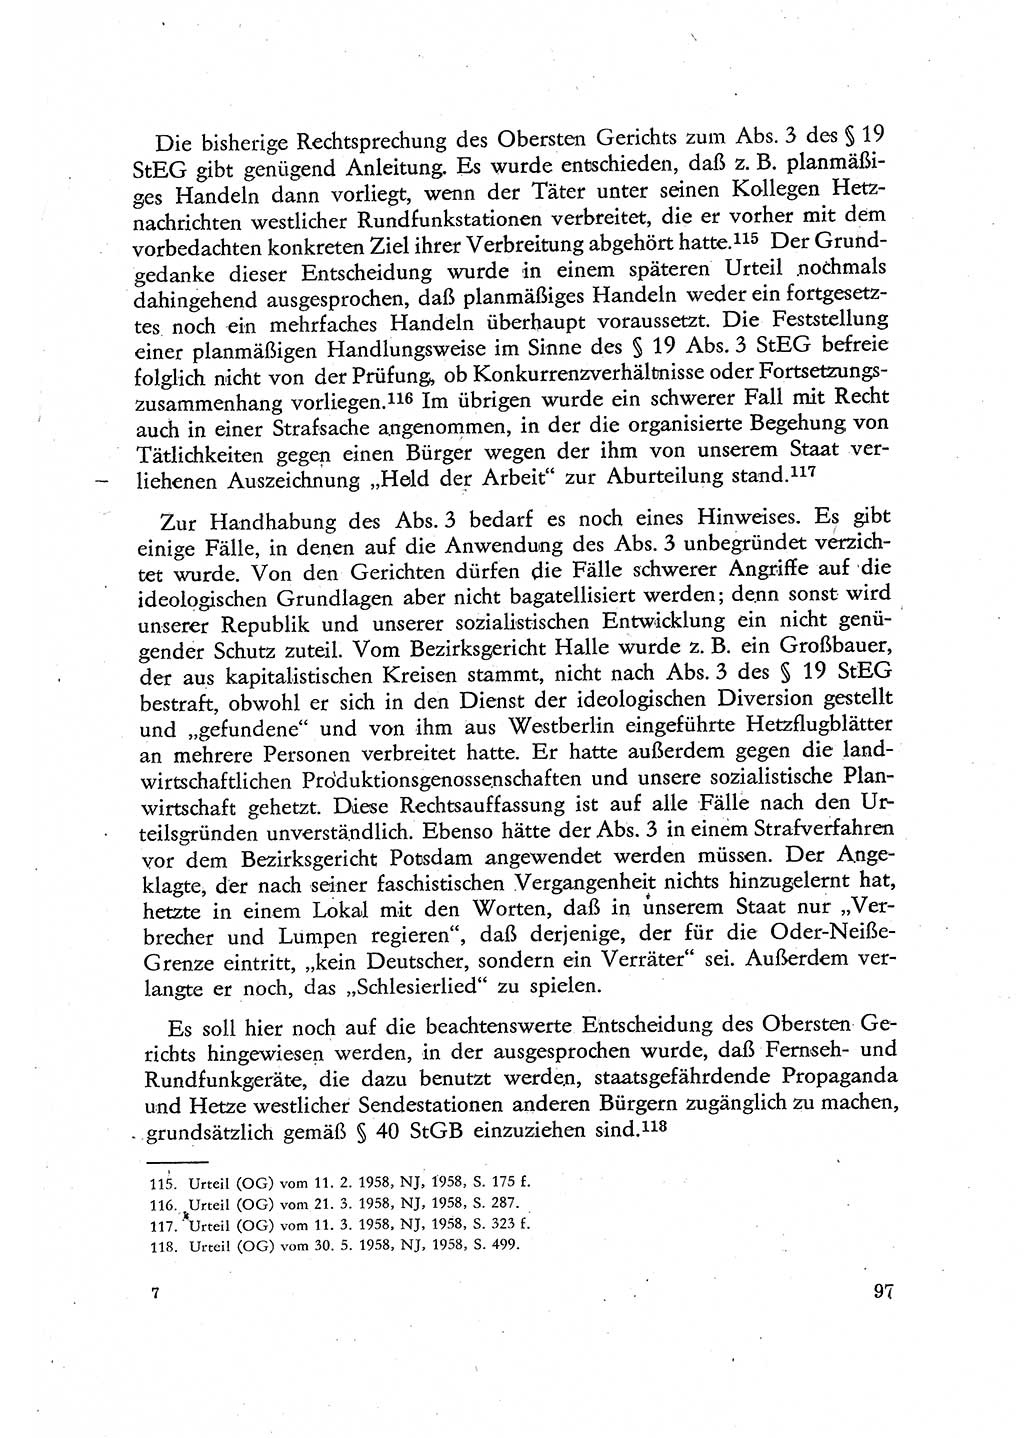 Beiträge zum Strafrecht [Deutsche Demokratische Republik (DDR)], Staatsverbrechen 1959, Seite 97 (Beitr. Strafr. DDR St.-Verbr. 1959, S. 97)